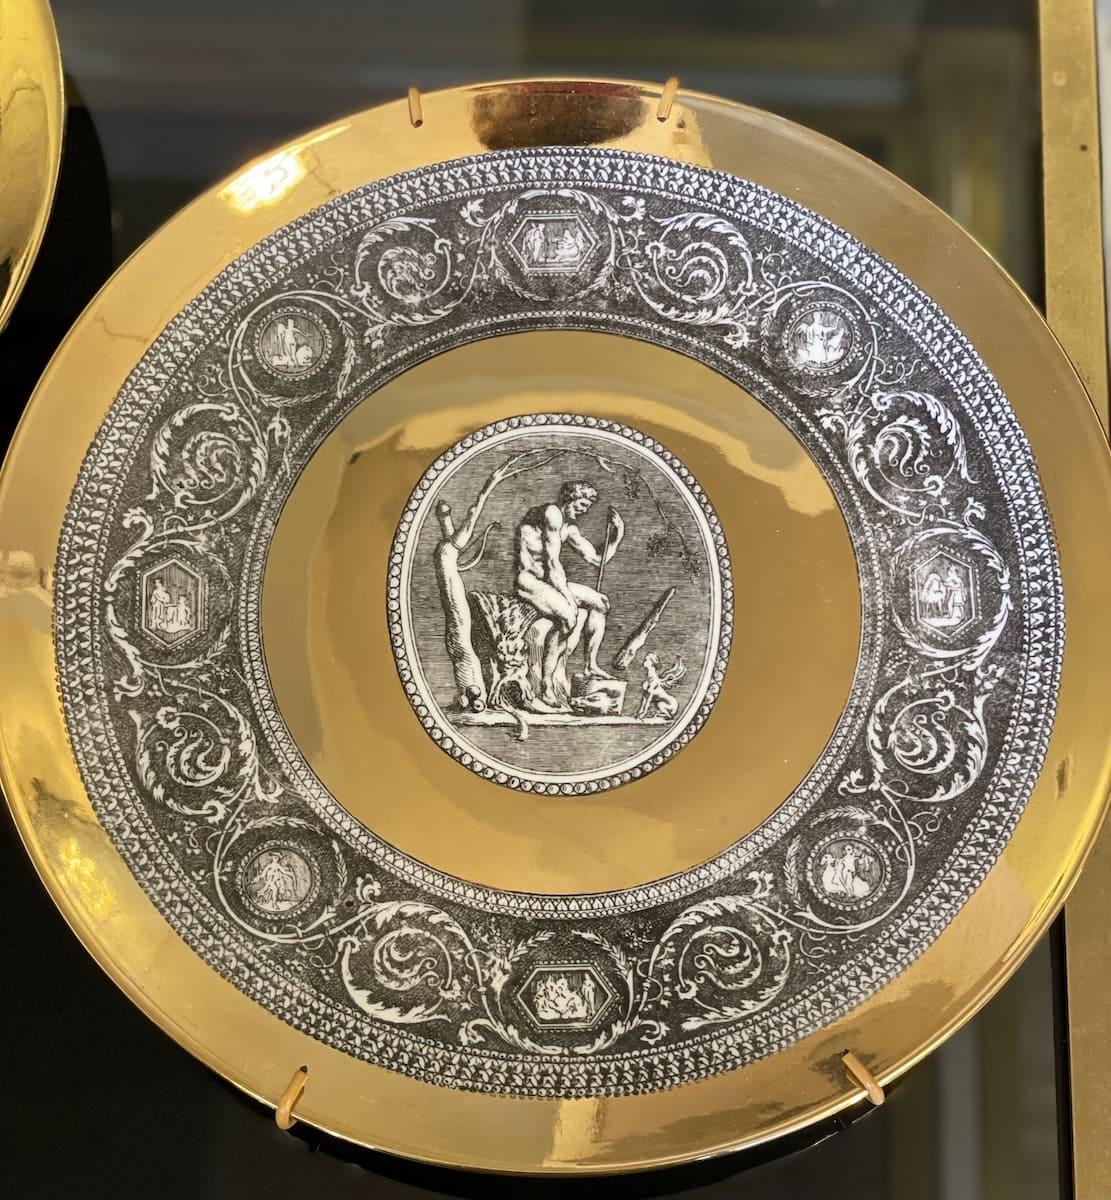 1960s Fornasetti Cammei Mythological Collection Gold Leaf Plates Signed Set of 6

Ensemble de 6 assiettes en porcelaine de la série 